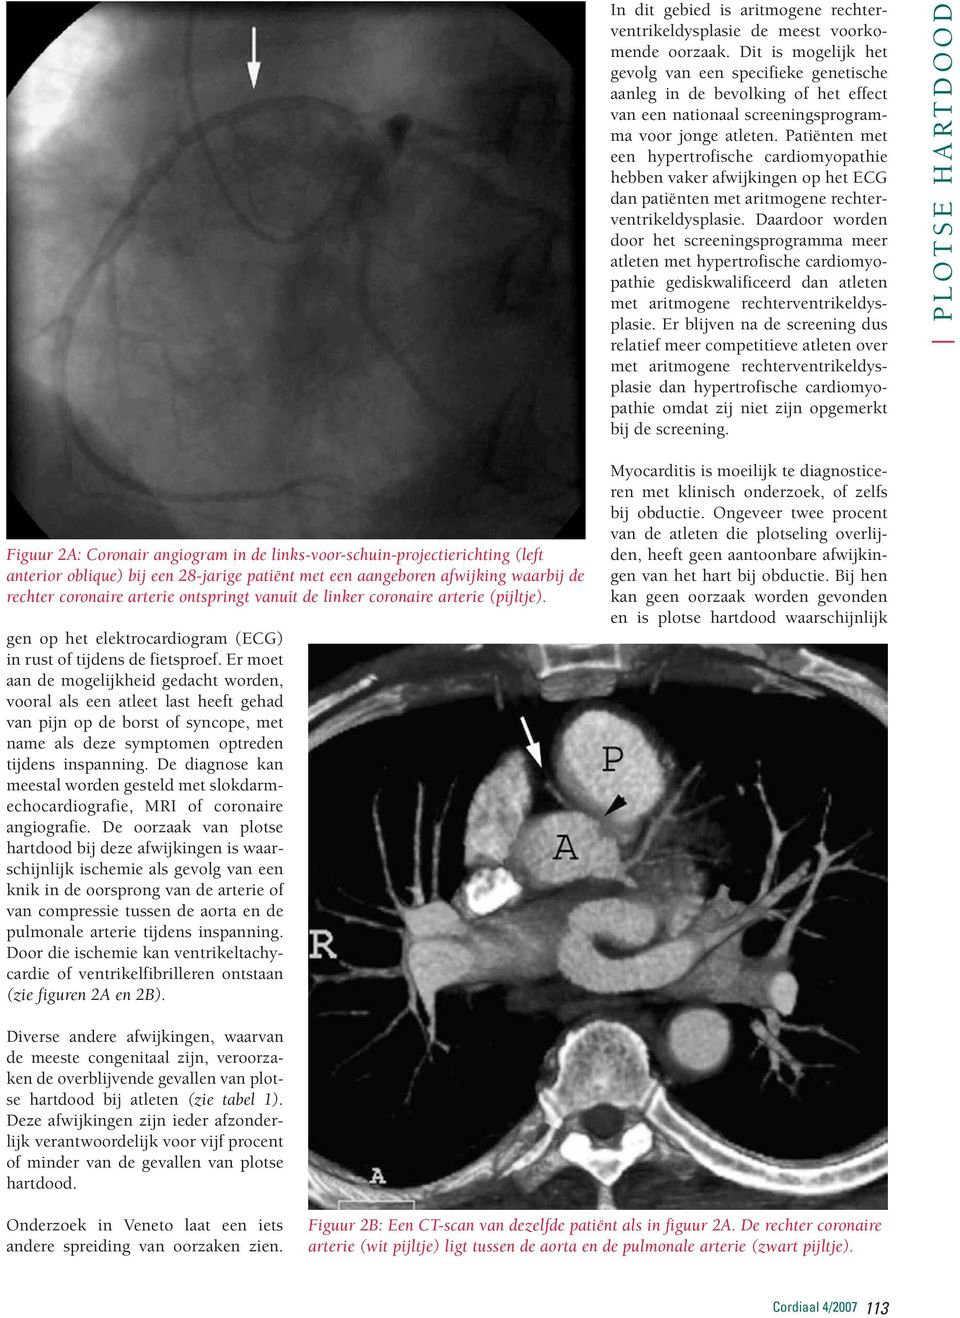 Patiënten met een hypertrofische cardiomyopathie hebben vaker afwijkingen op het ECG dan patiënten met aritmogene rechterventrikeldysplasie.